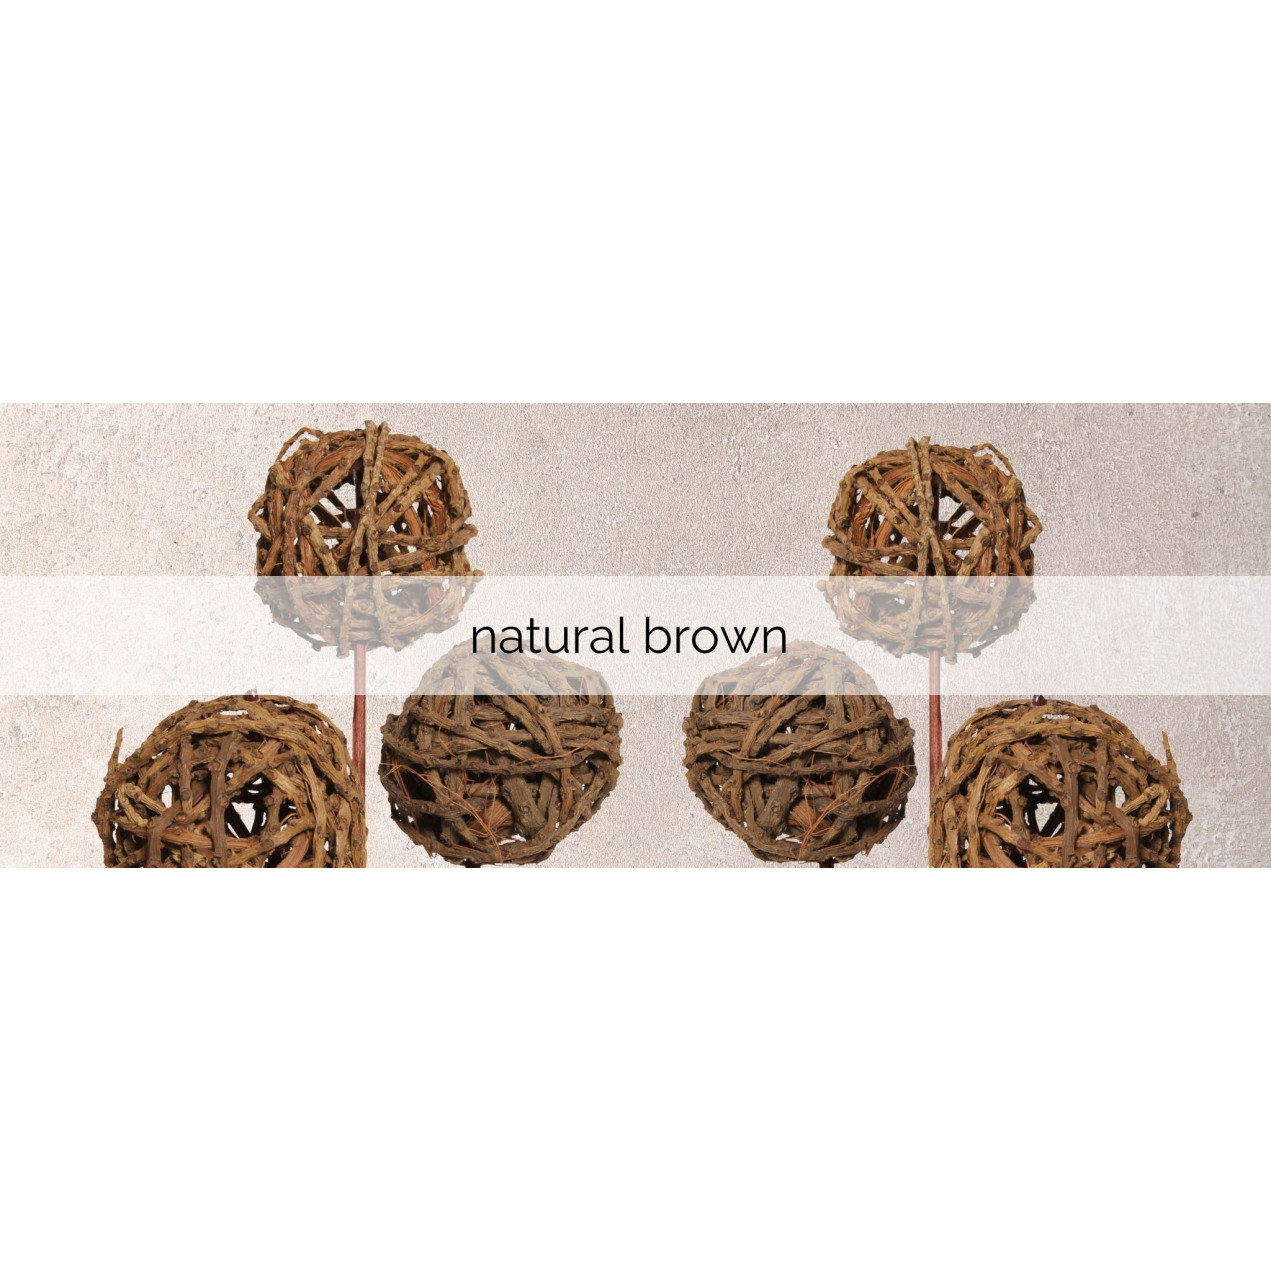 natural brown